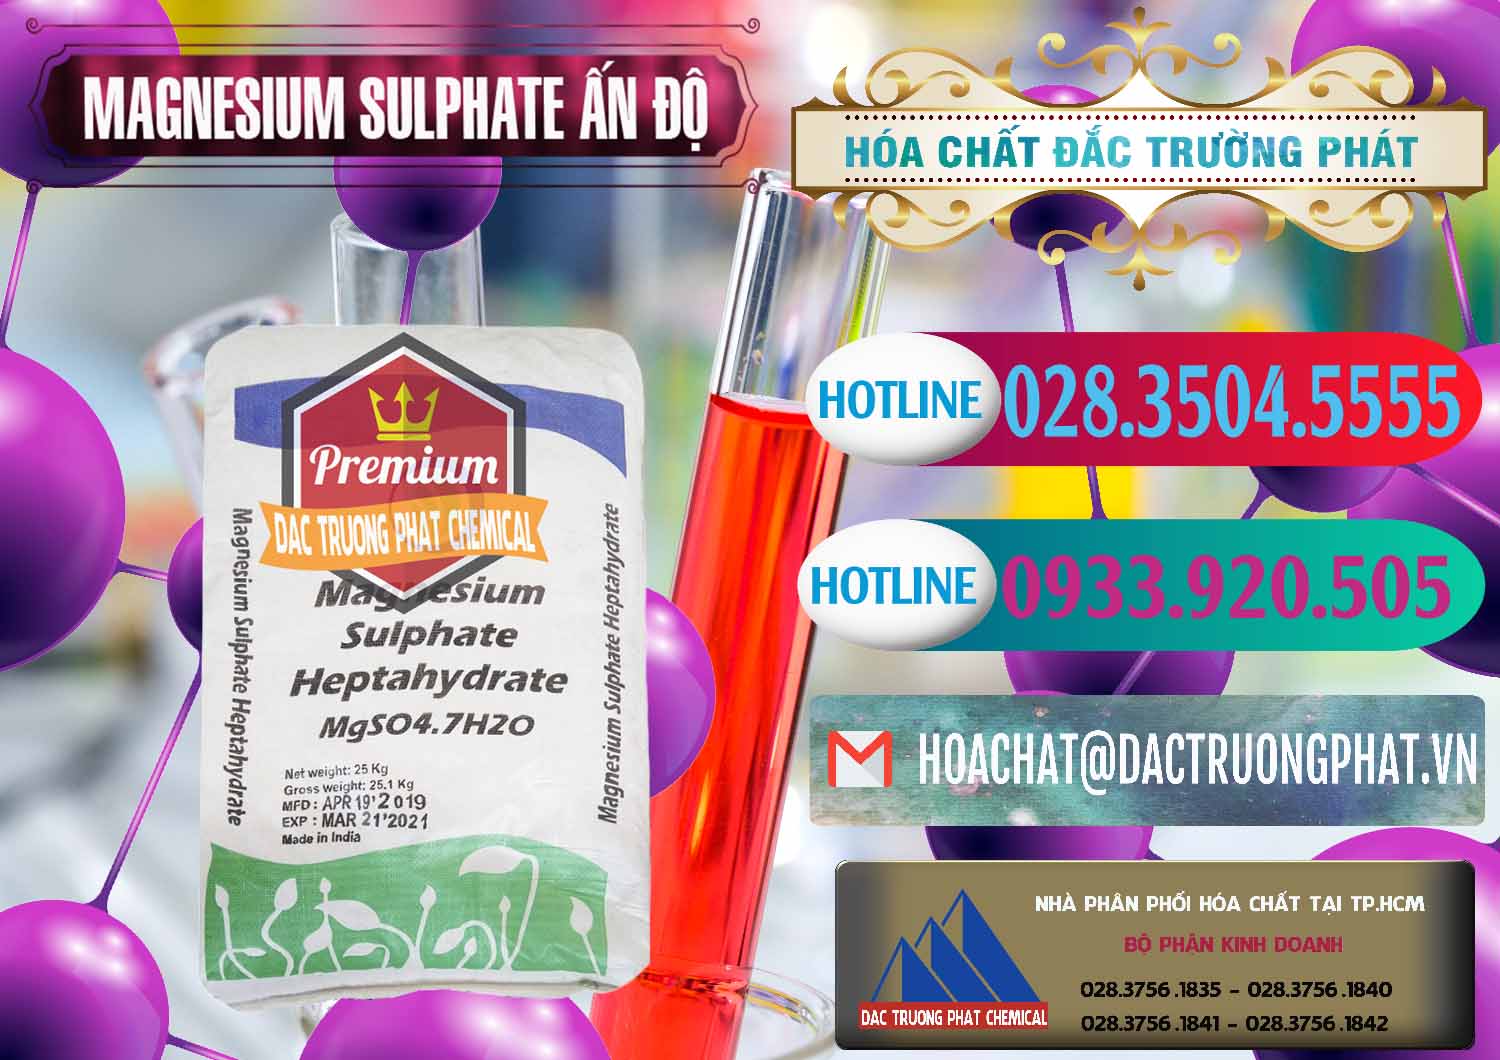 Chuyên kinh doanh ( bán ) MGSO4.7H2O – Magnesium Sulphate Heptahydrate Ấn Độ India - 0362 - Công ty cung cấp _ kinh doanh hóa chất tại TP.HCM - truongphat.vn